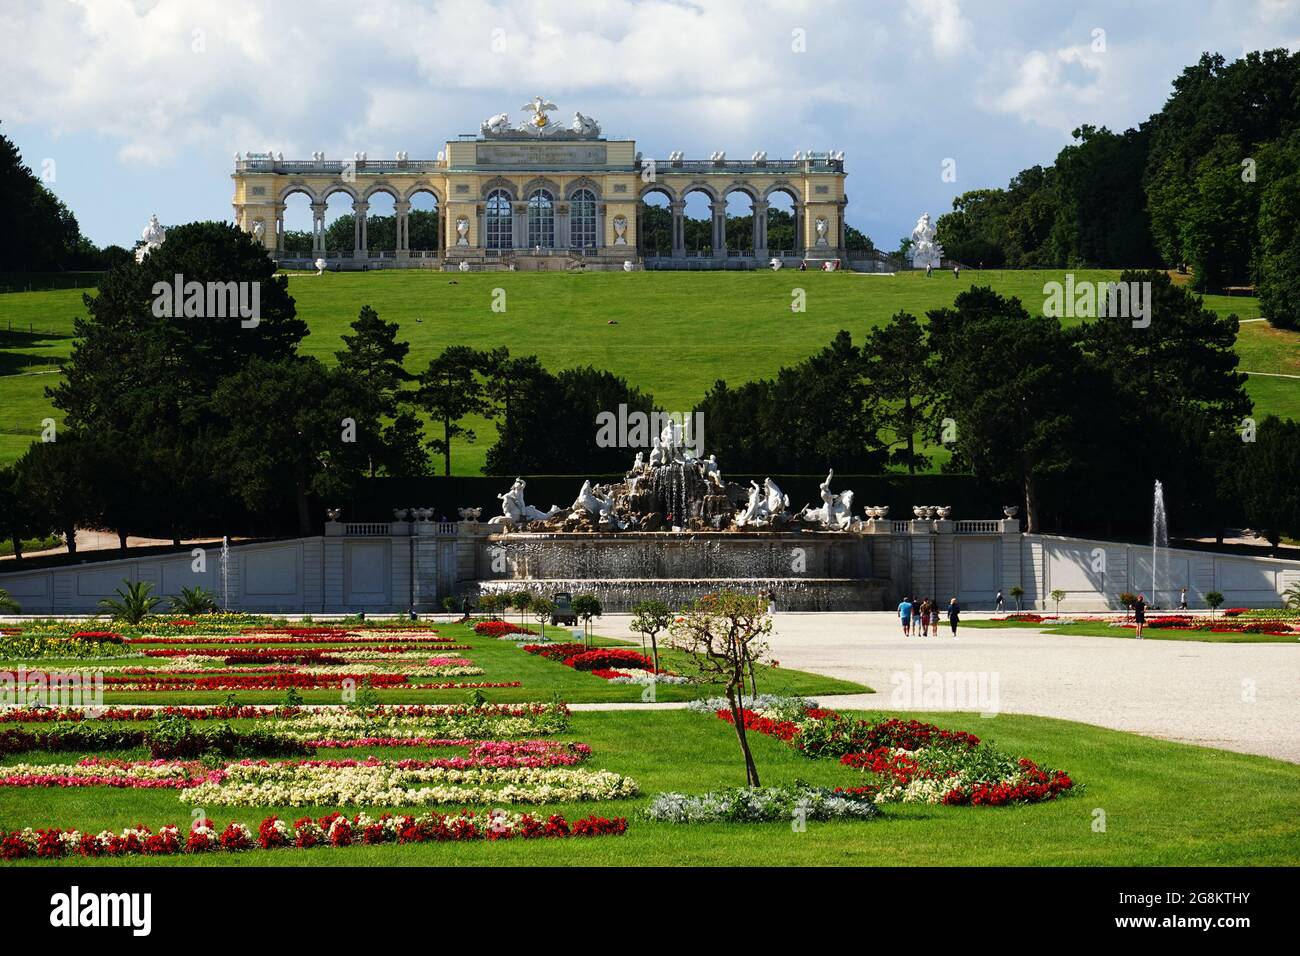 Wien, Österreich - Blick vom Schloss Schönbrunn in Richtung Neptunbrunnen und Gloriette über herrliche Blumen und Parkanlagen Banque D'Images